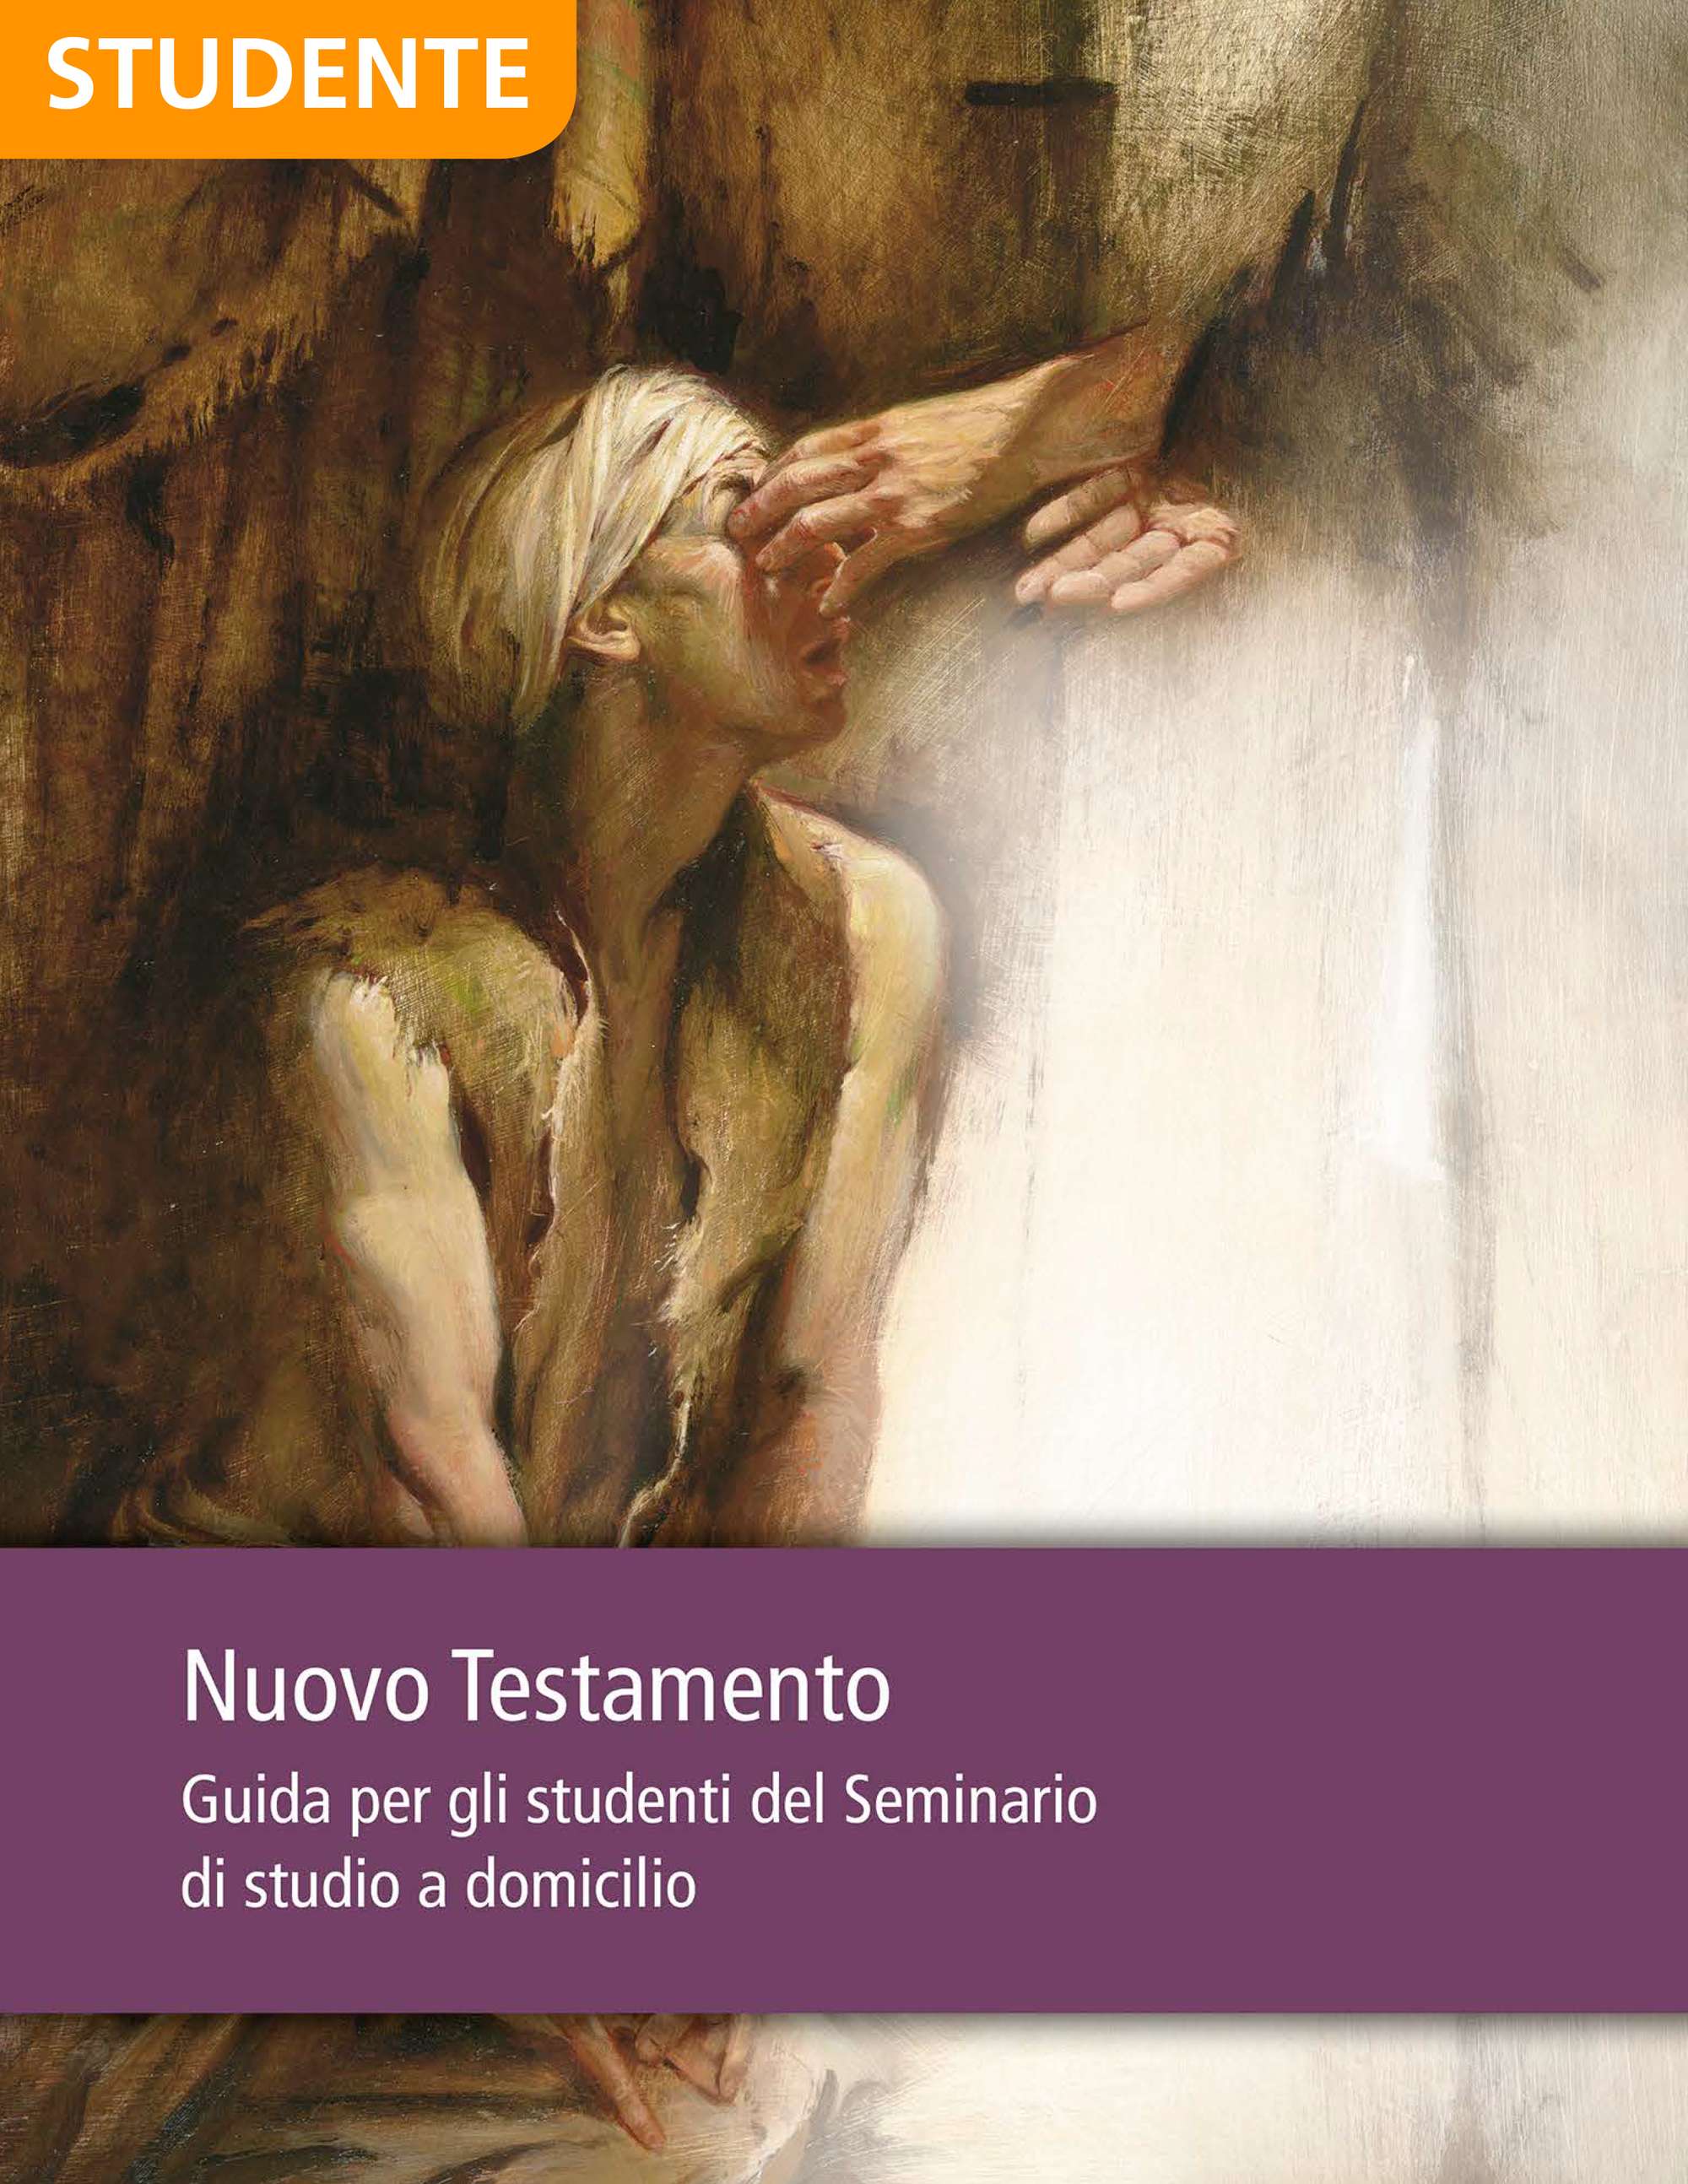 Nuovo Testamento – Guida per gli studenti del corso di studio a domicilio del Seminario